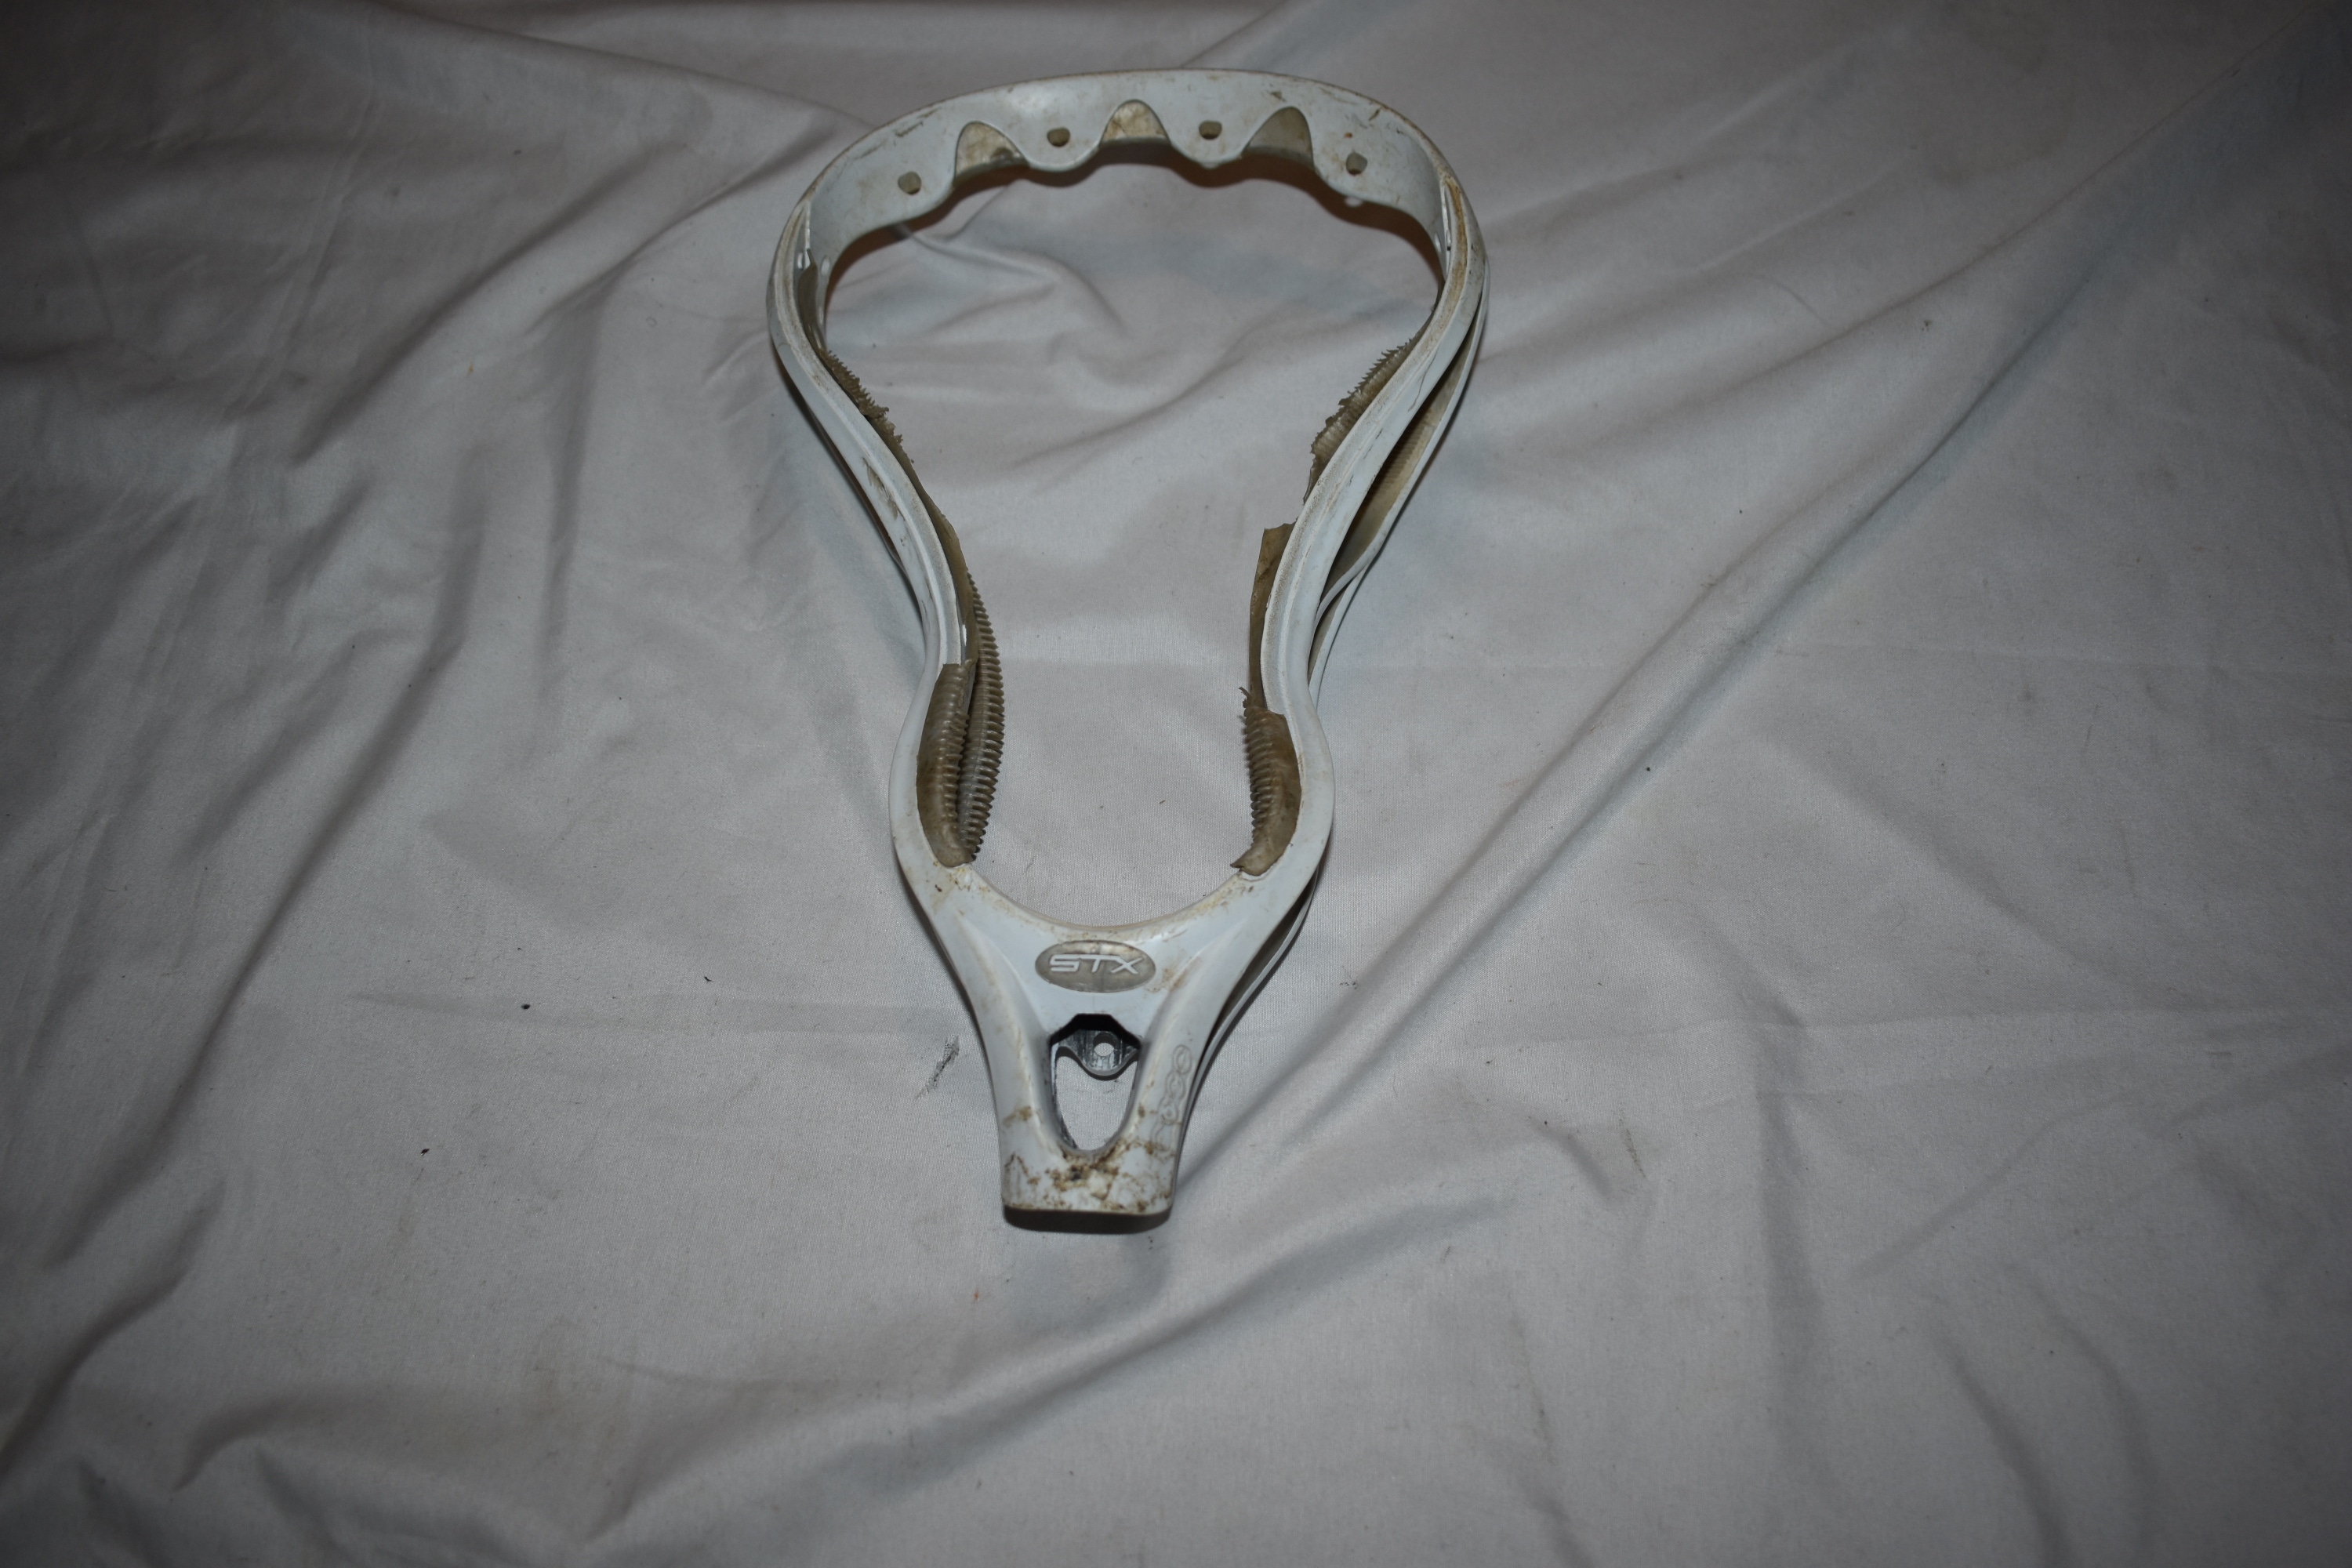 STX Fuse Unstrung Lacrosse Head